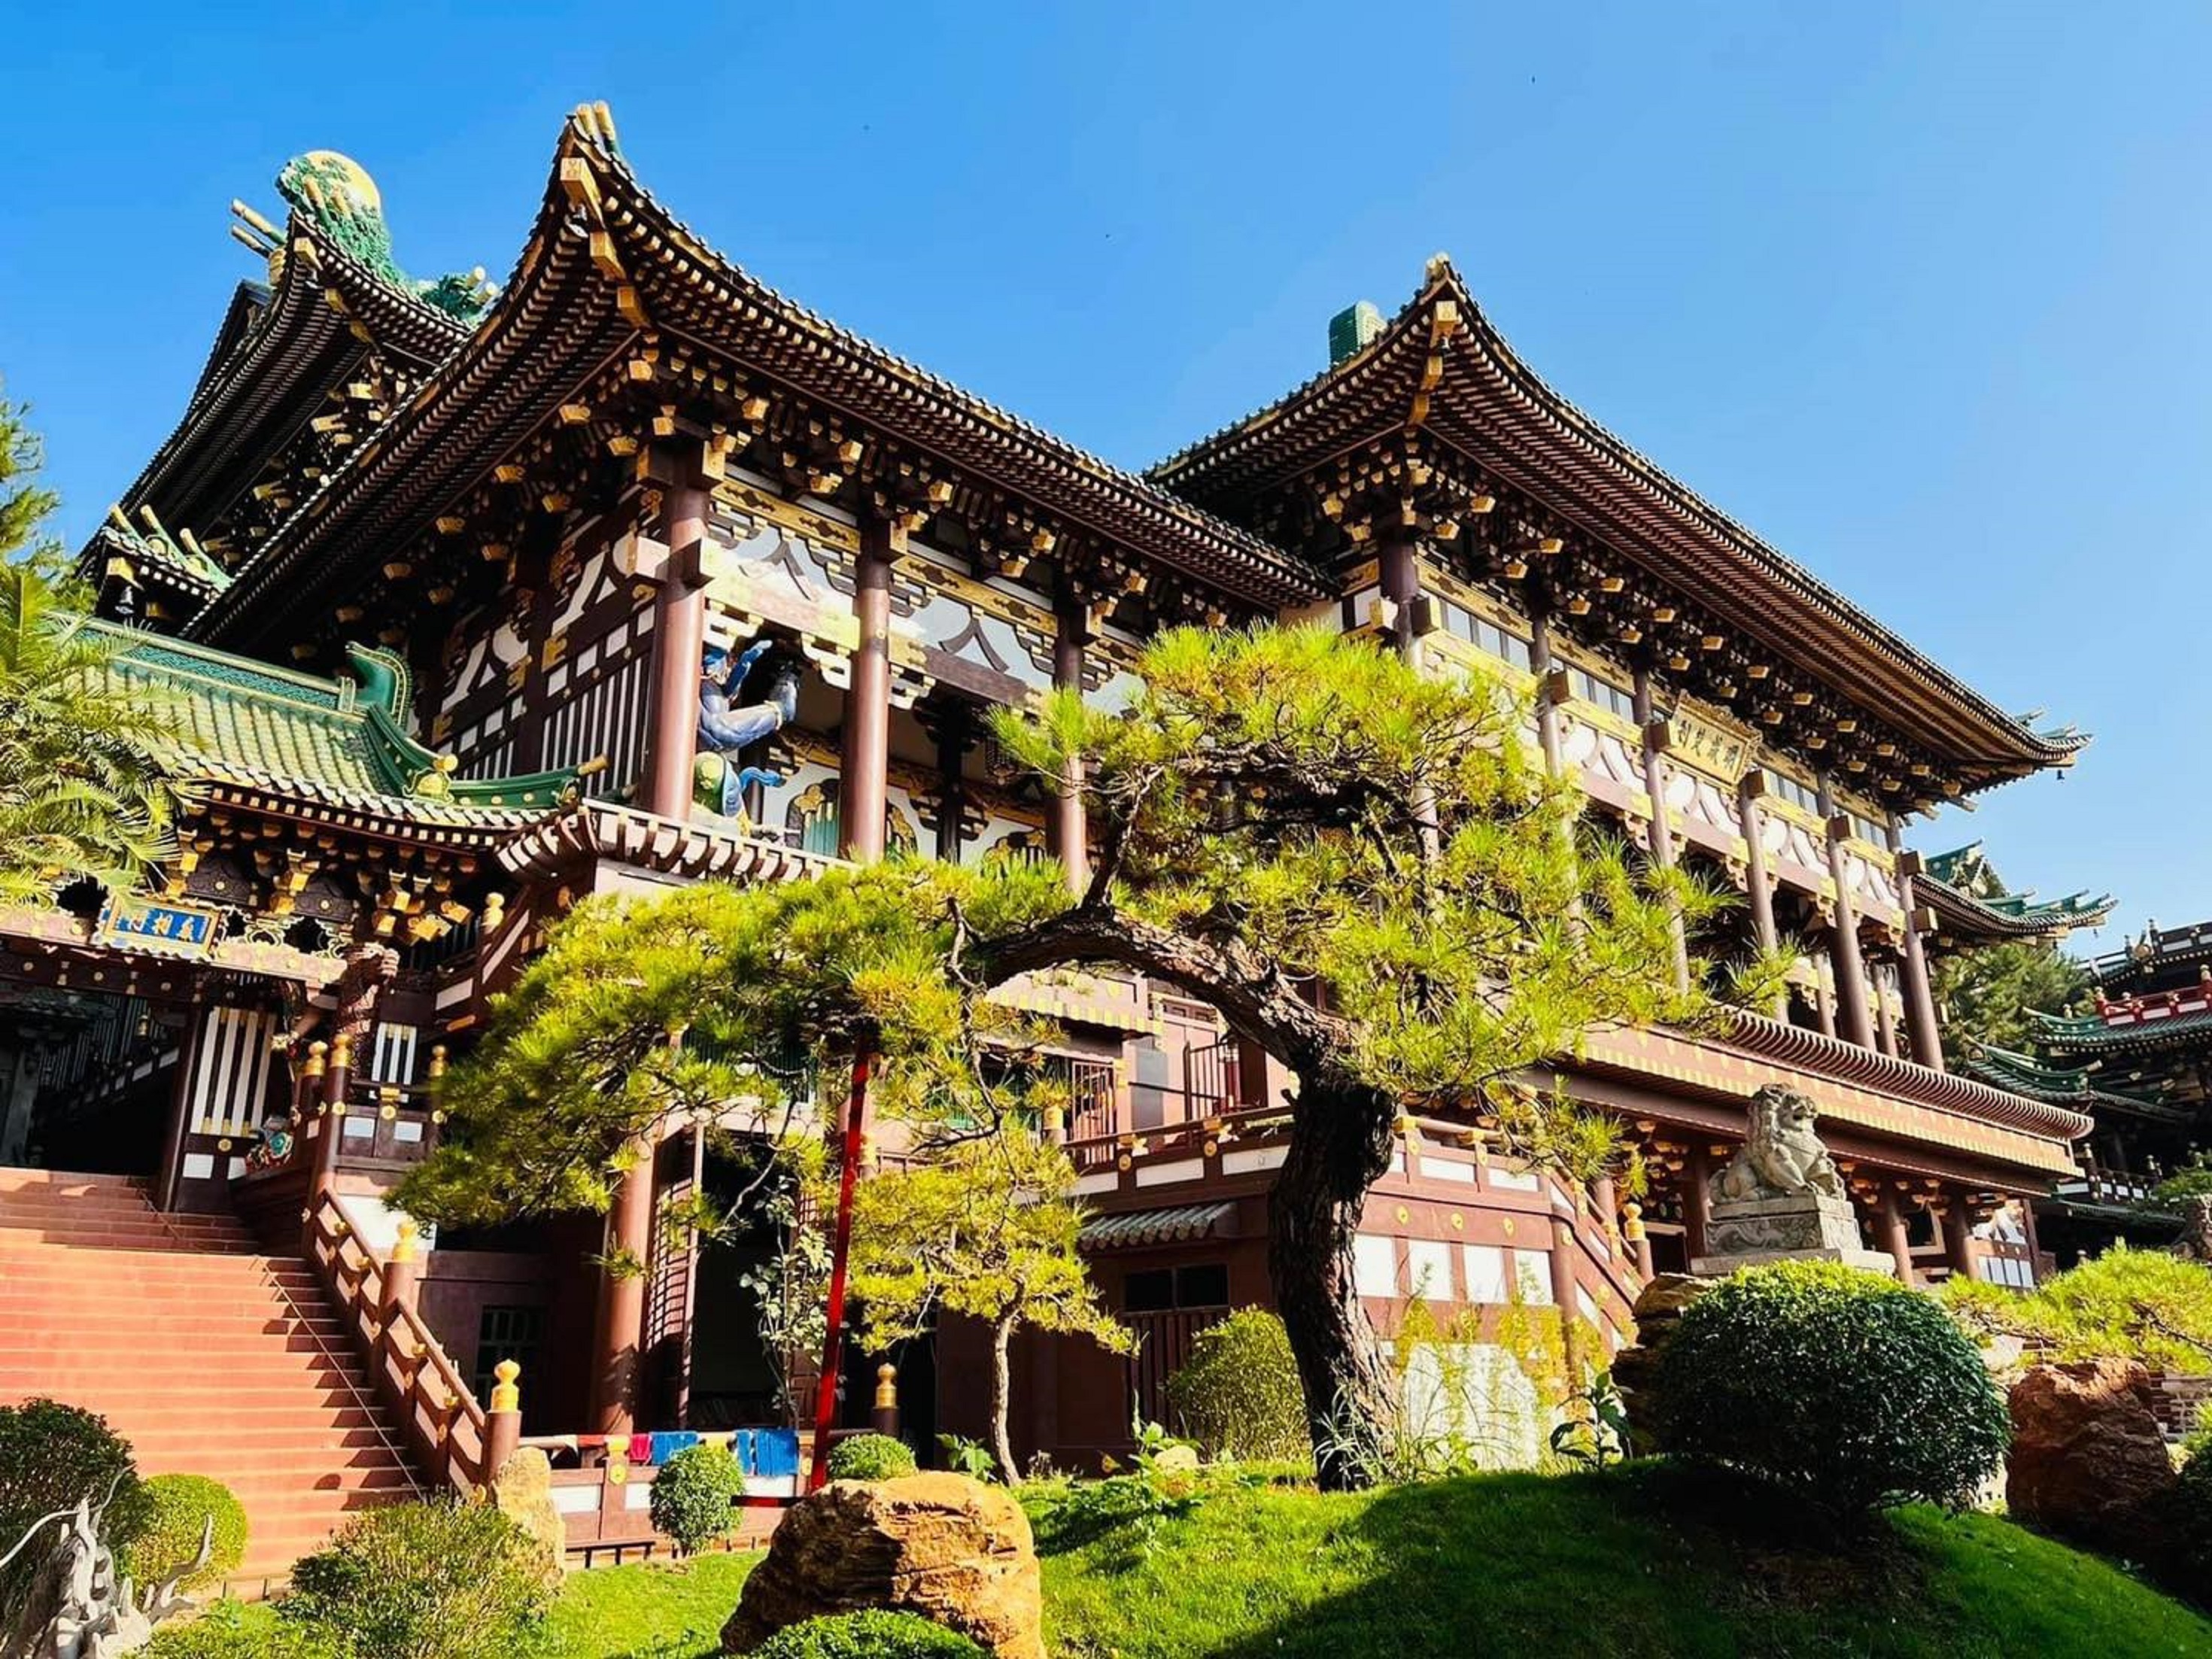 Kiến trúc kỳ lạ của ngôi chùa Minh Thành nơi phố núi pleiku